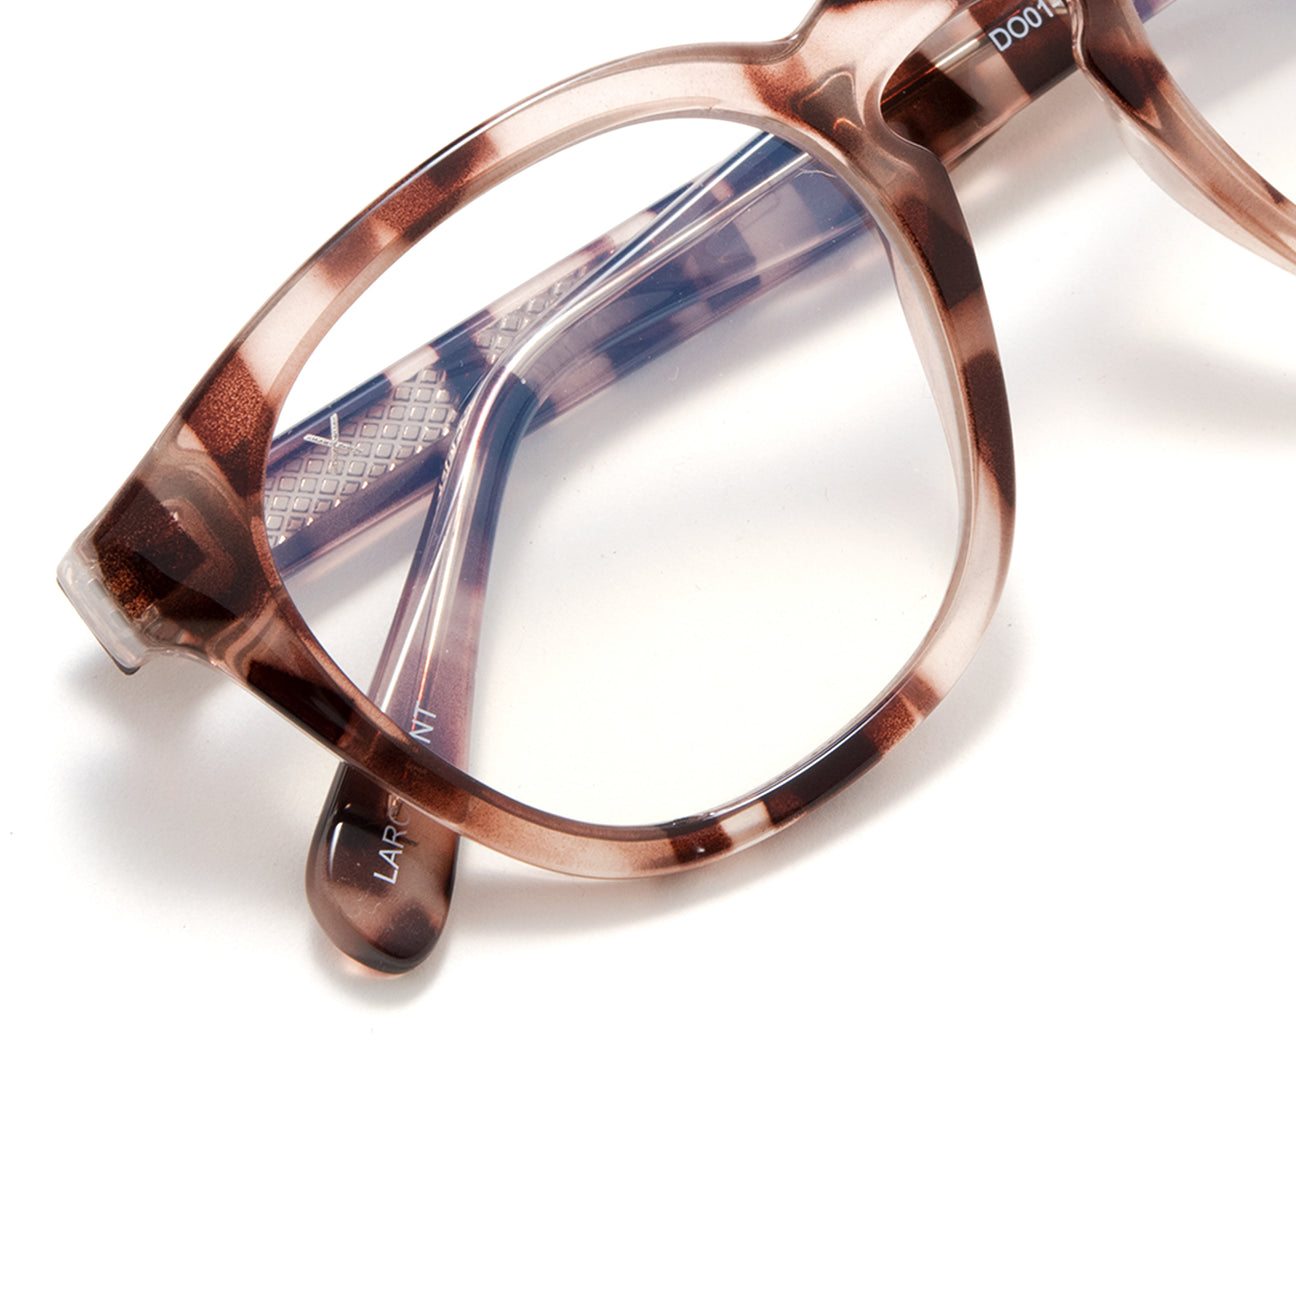 Larchmont Bluelight Tech Lens Glasses